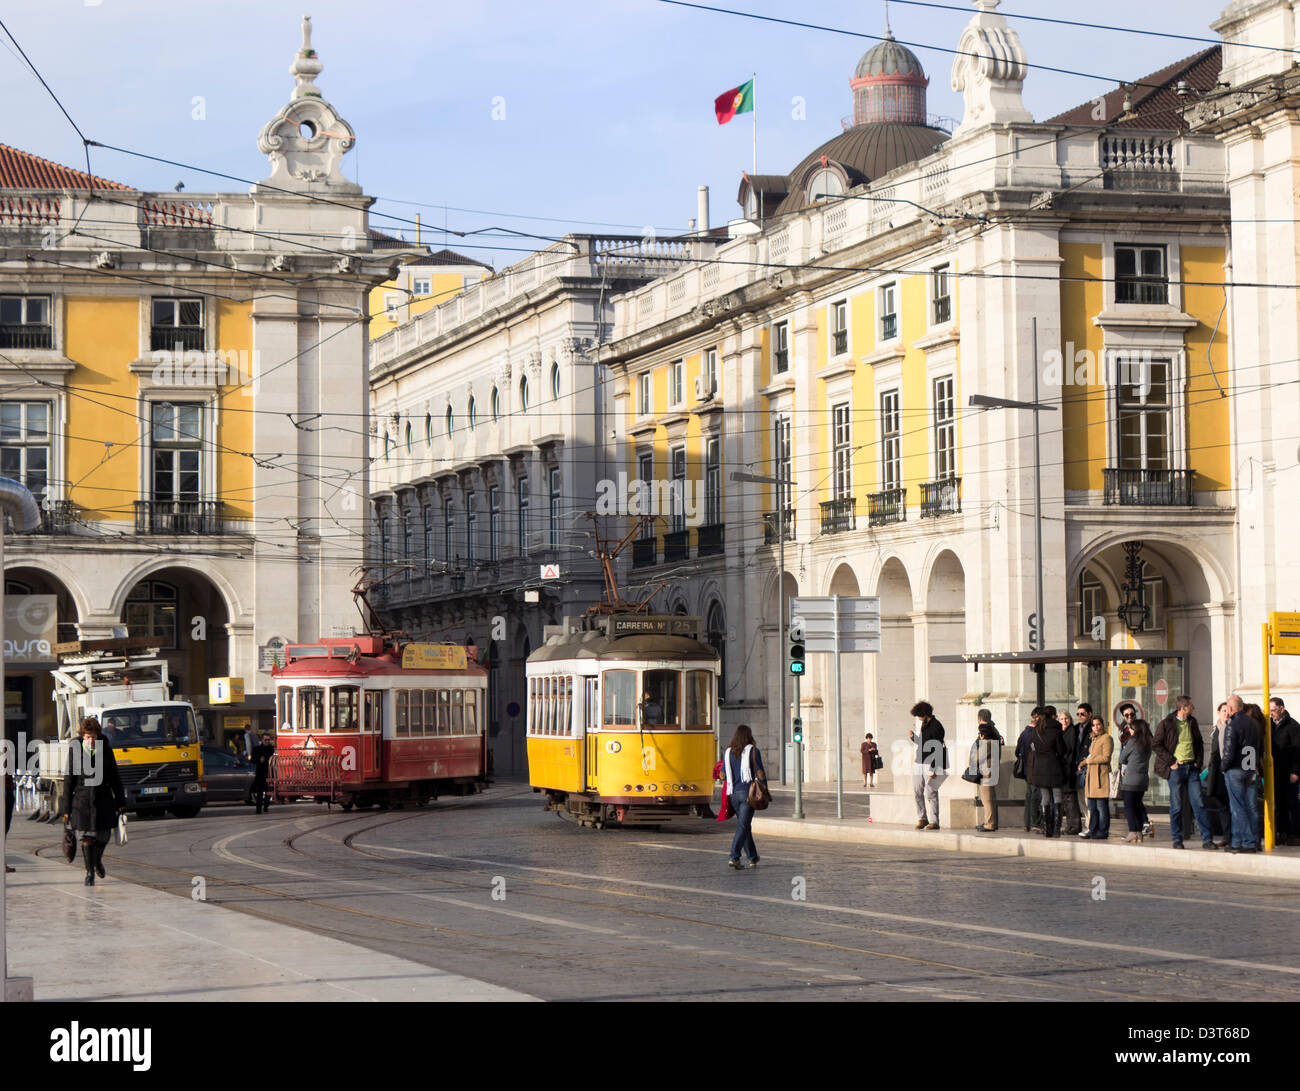 The Praça do Comércio, Lisbon, Portugal. Typical trams. Stock Photo